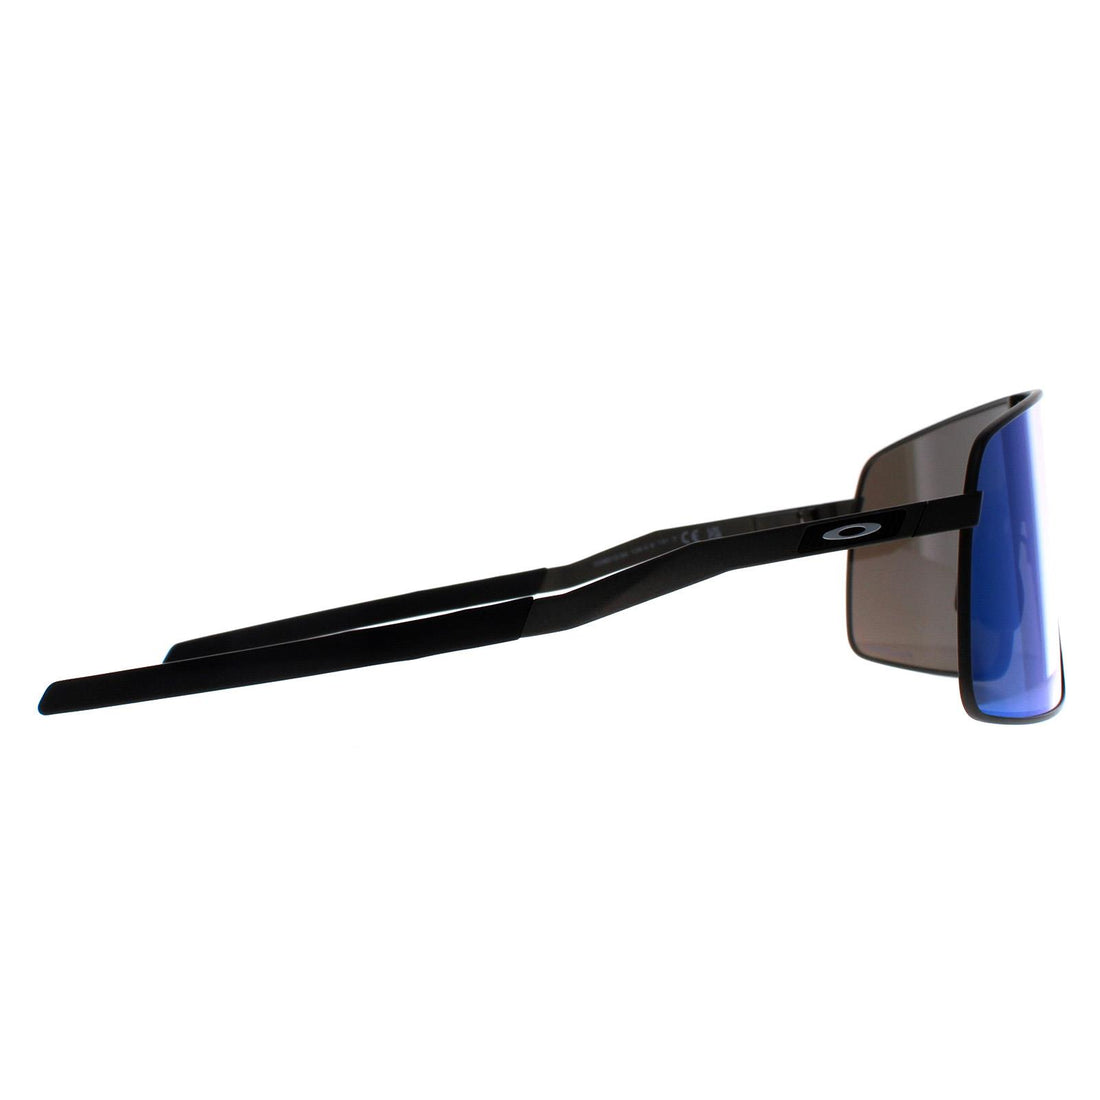 Oakley Sunglasses Sutro TI OO6013-04 Satin Lead Prizm Sapphire